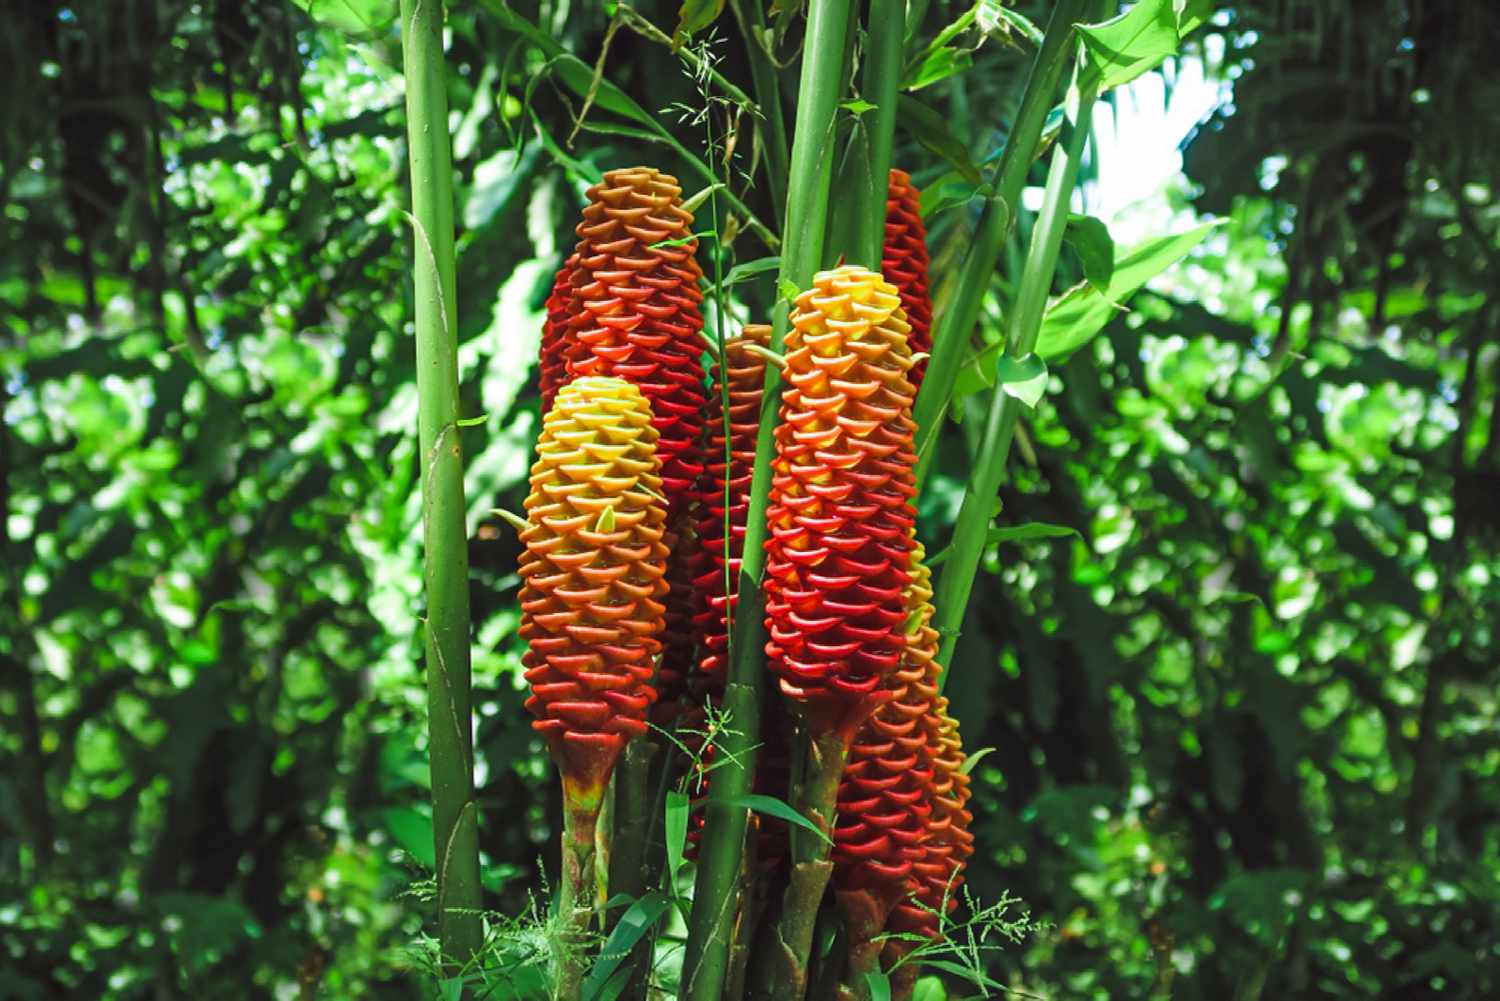 Planta de gengibre colmeia com brácteas vermelhas e amarelas em forma de cone ao lado de hastes verdes altas